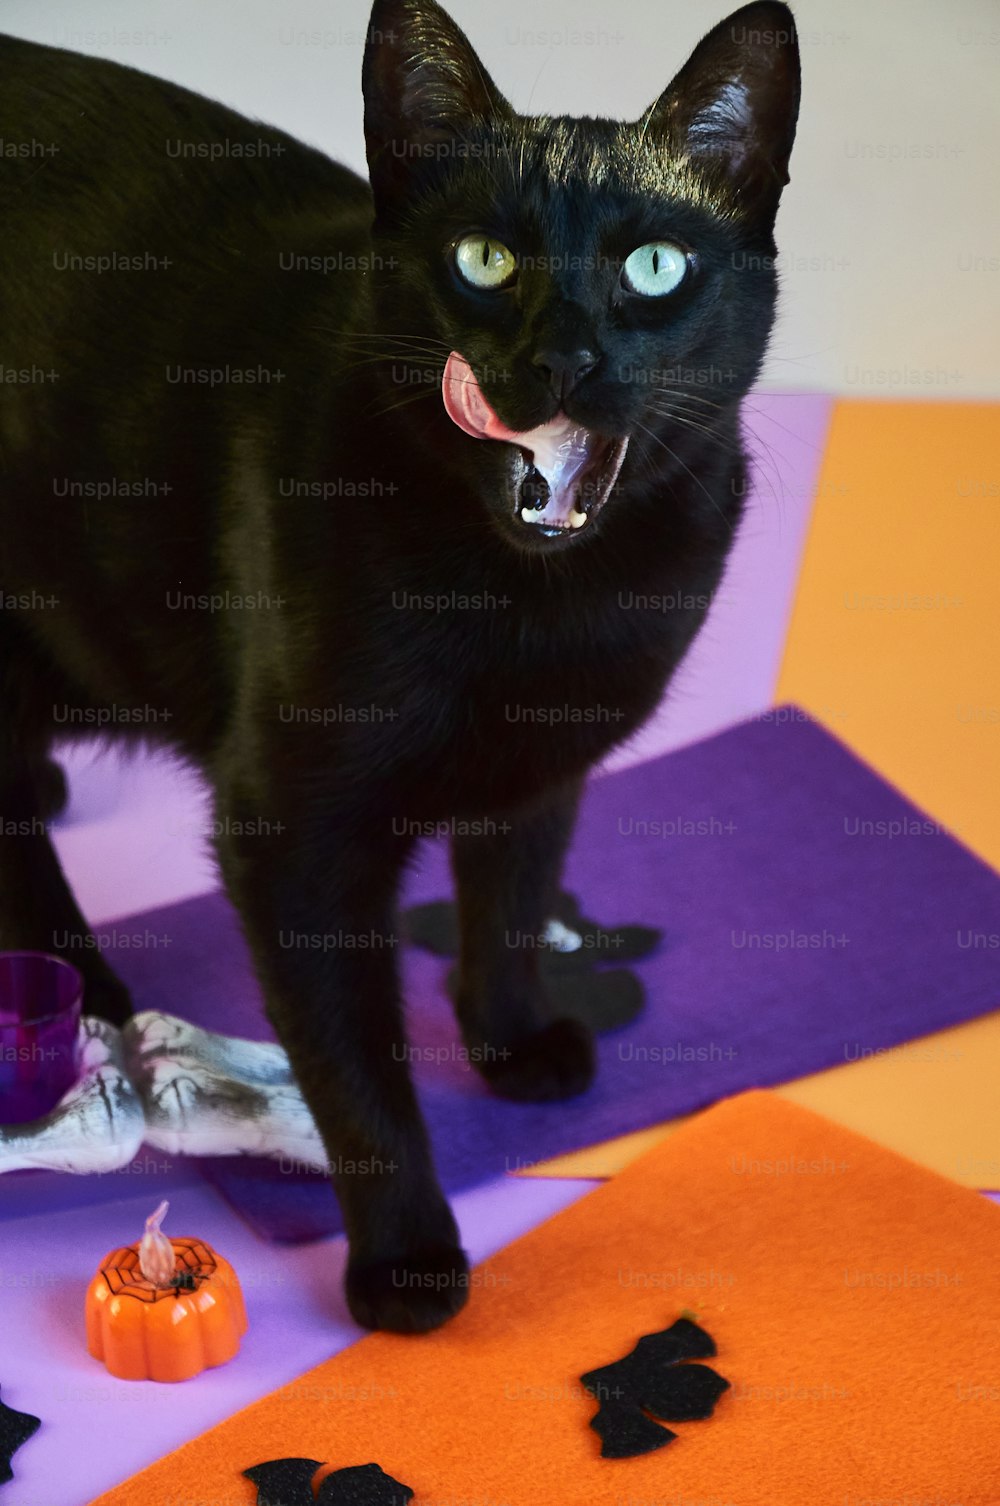 Un gato negro parado encima de una estera púrpura y naranja